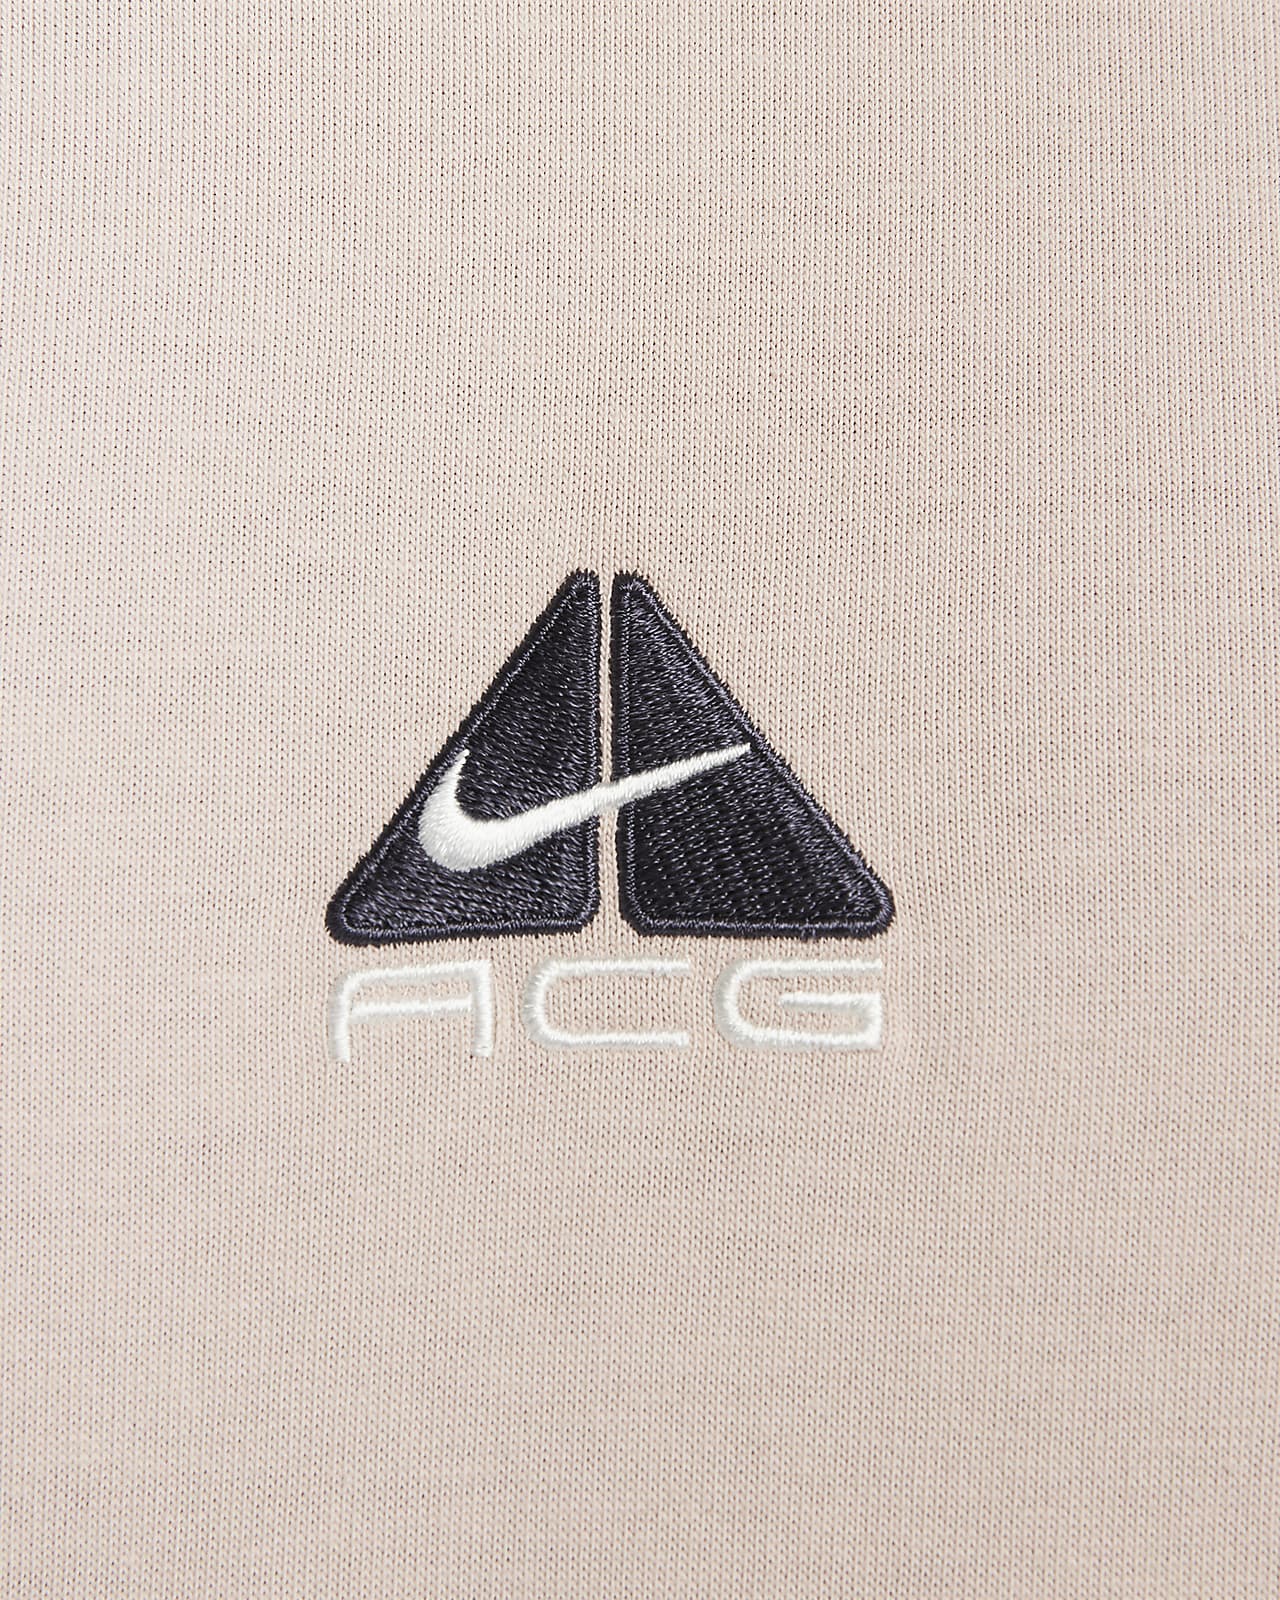 Nike Acg Men'S T-Shirt. Nike.Com